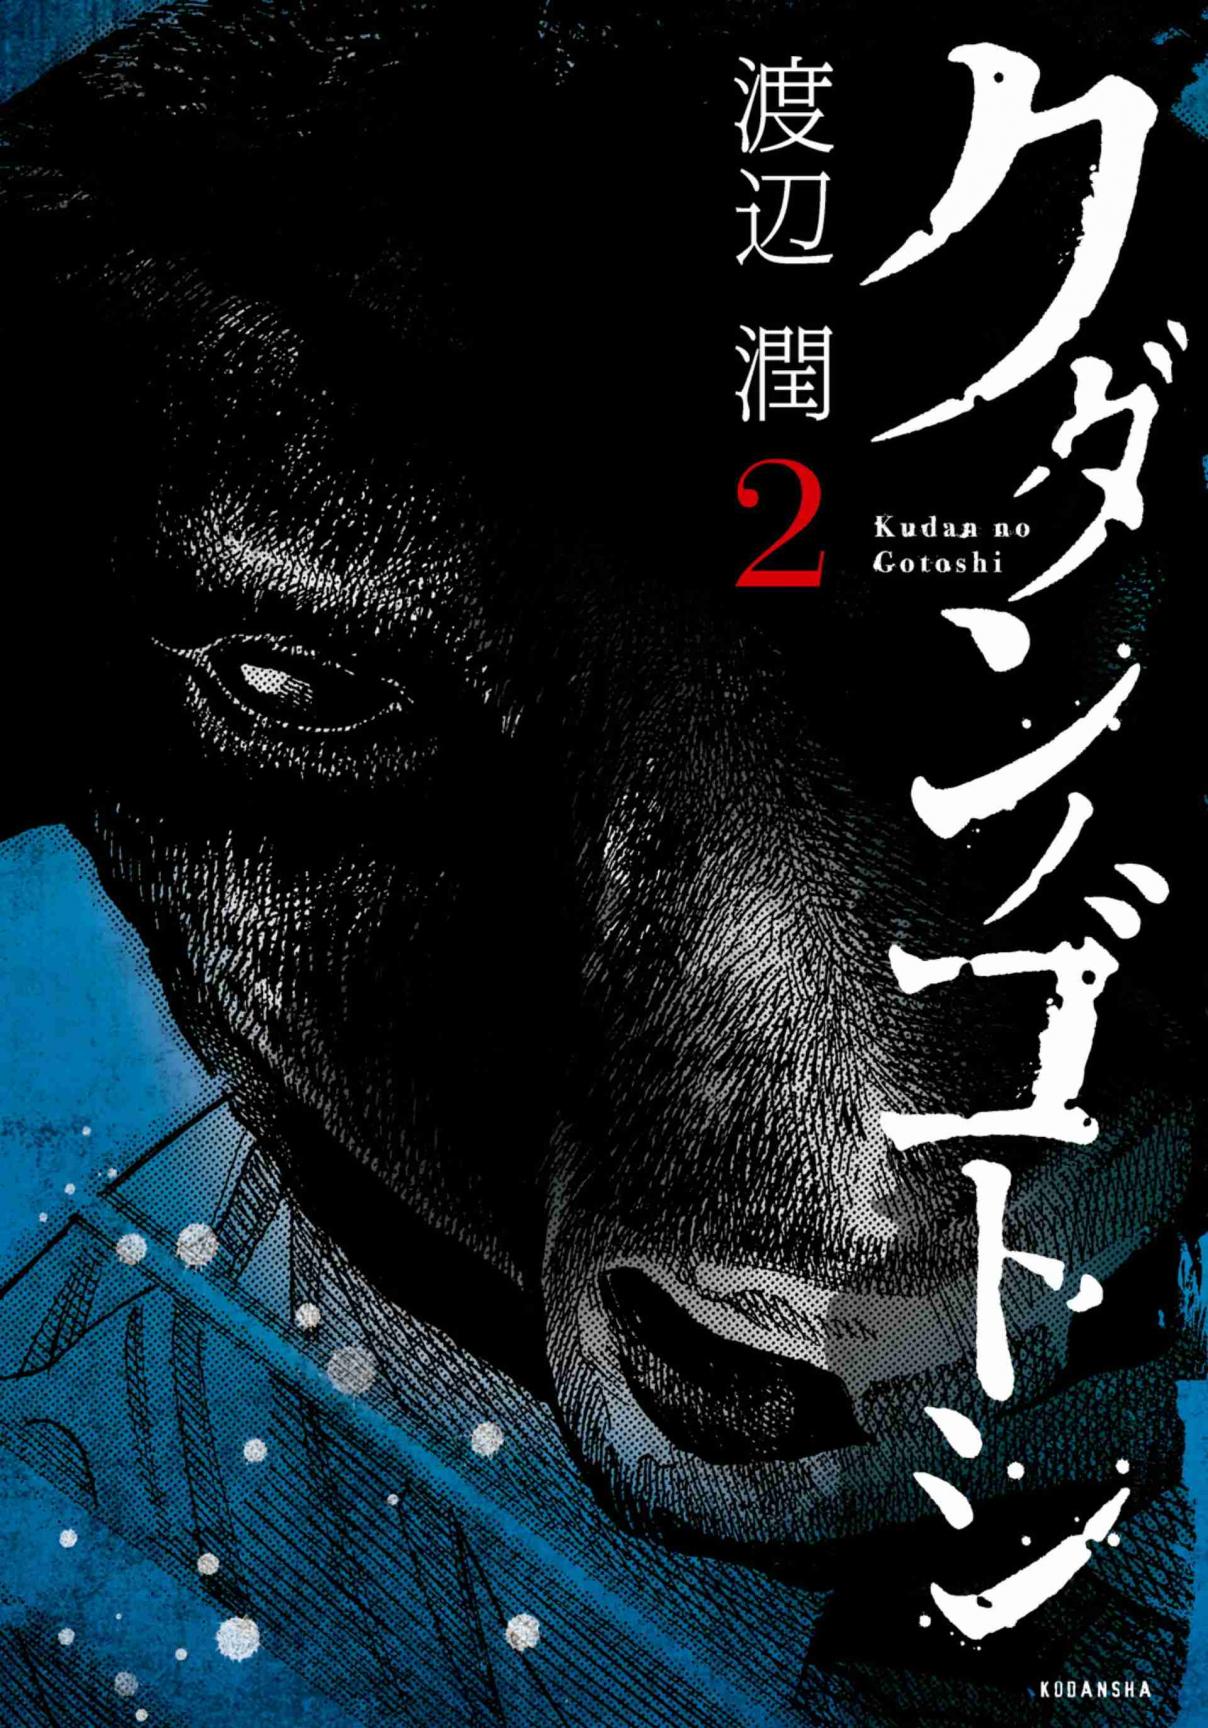 Kudan no Gotoshi Vol. 2 Ch. 12 Ayumi Baba < Part 6 >